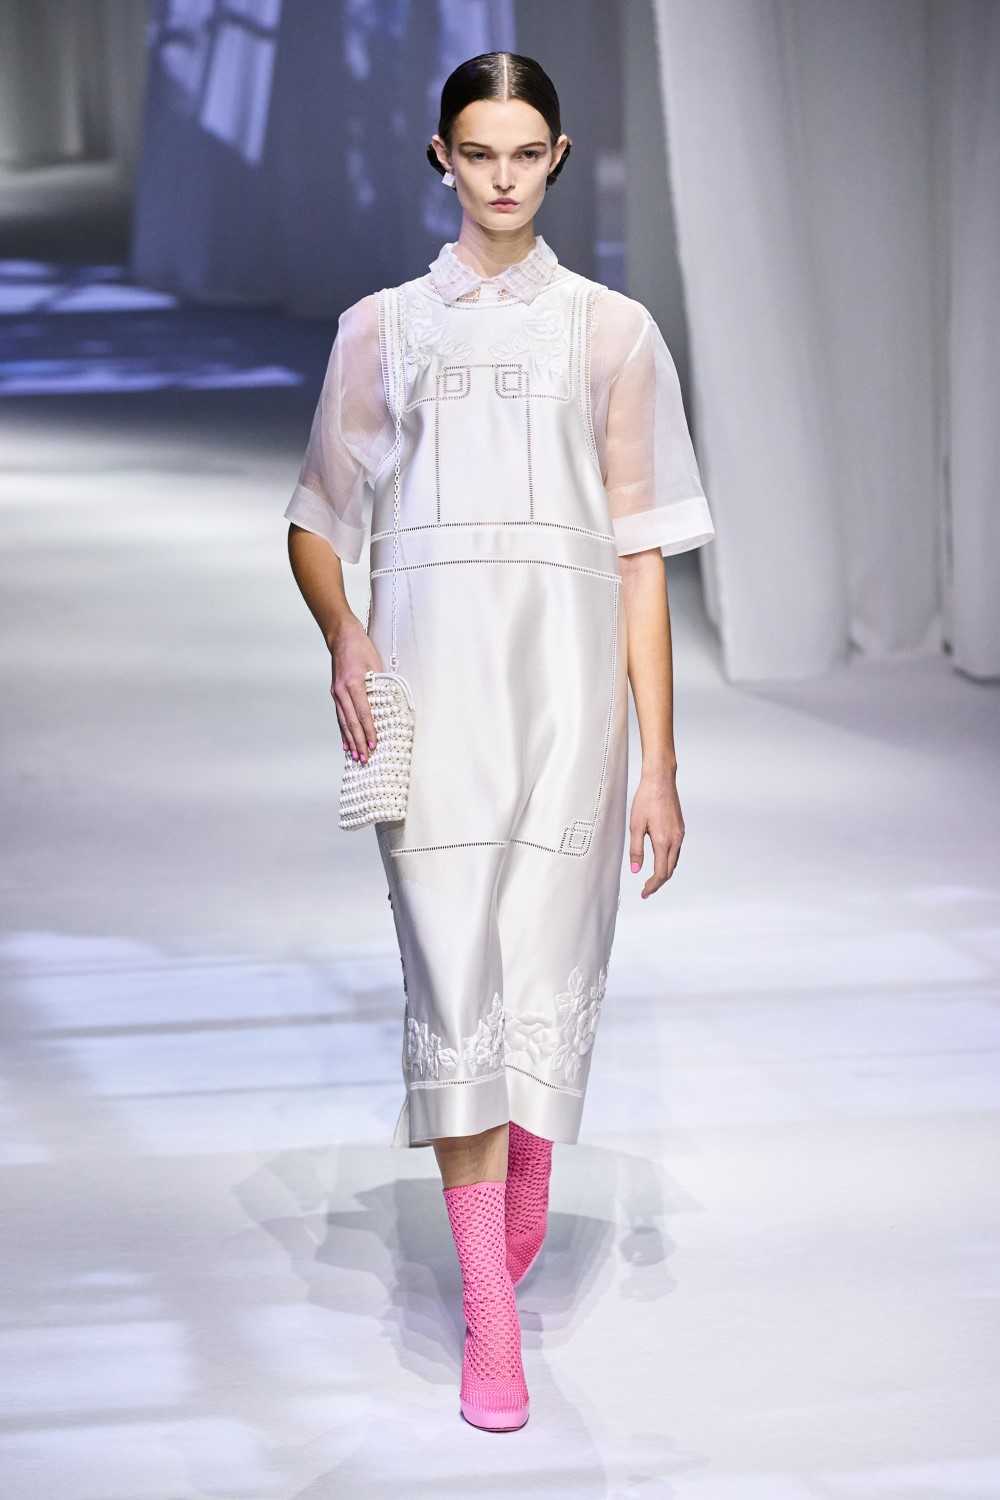 Модная женская одежда в бельевом стиле: мода 2021-2022, фото-подборка луков